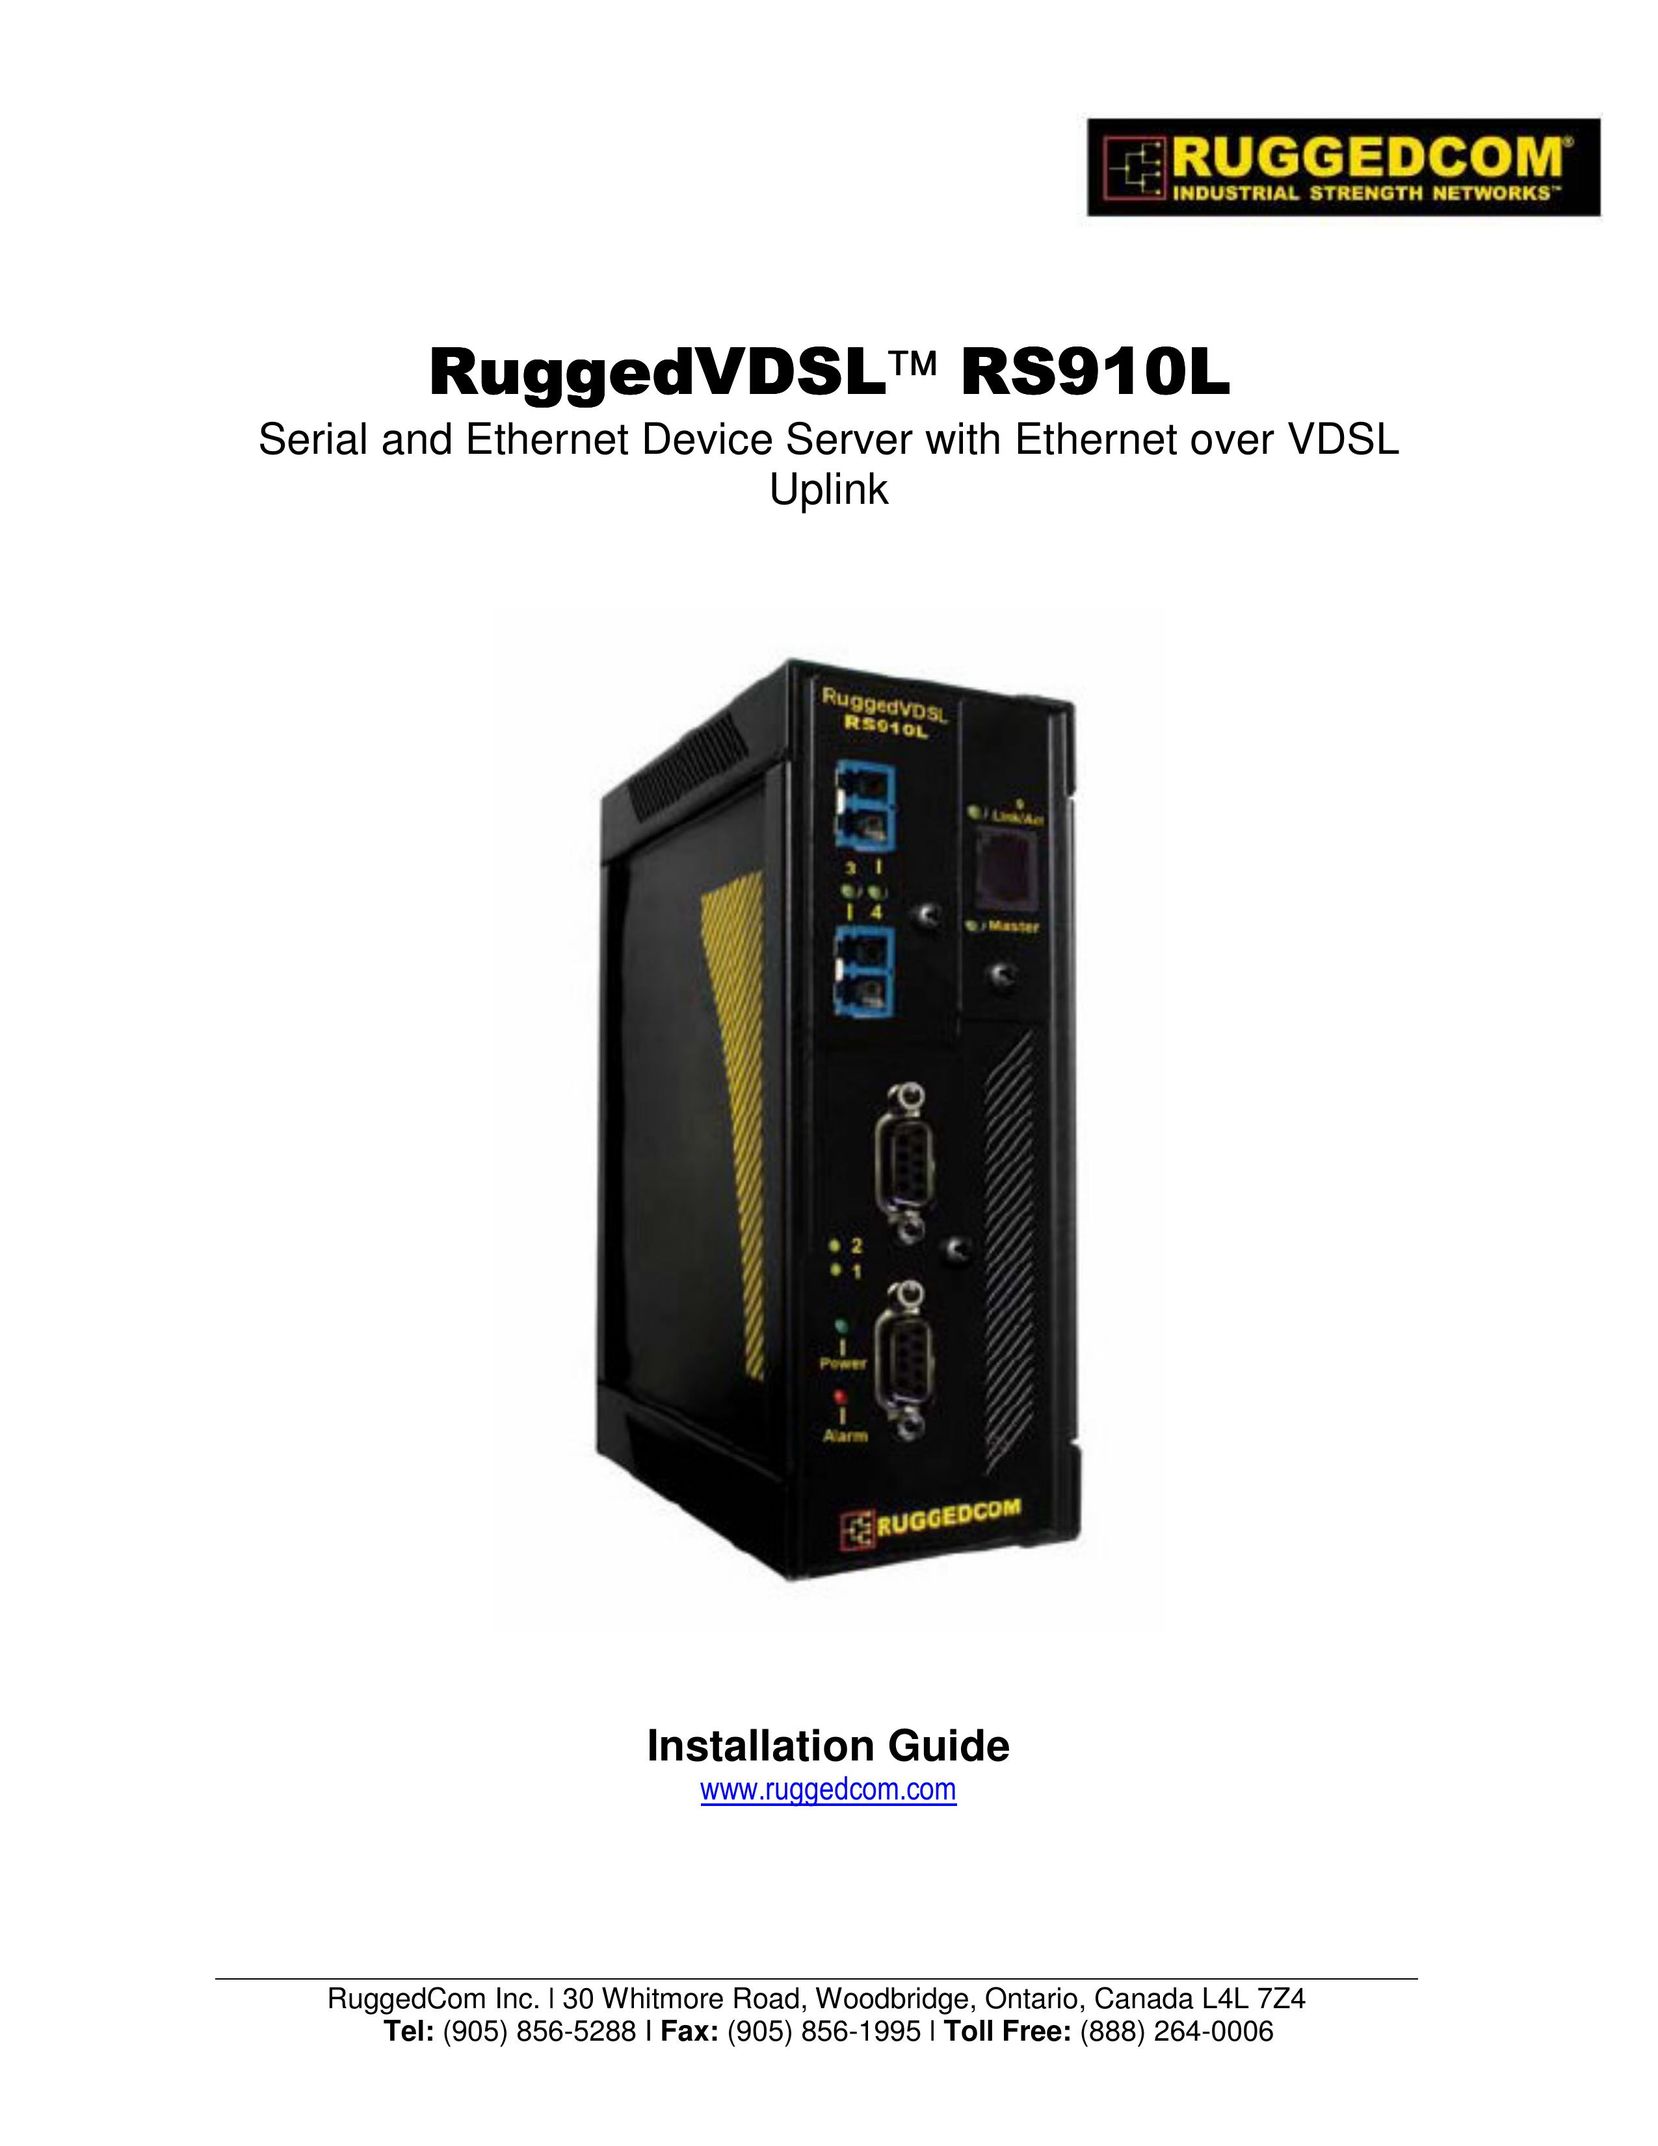 RuggedCom RS910L Switch User Manual